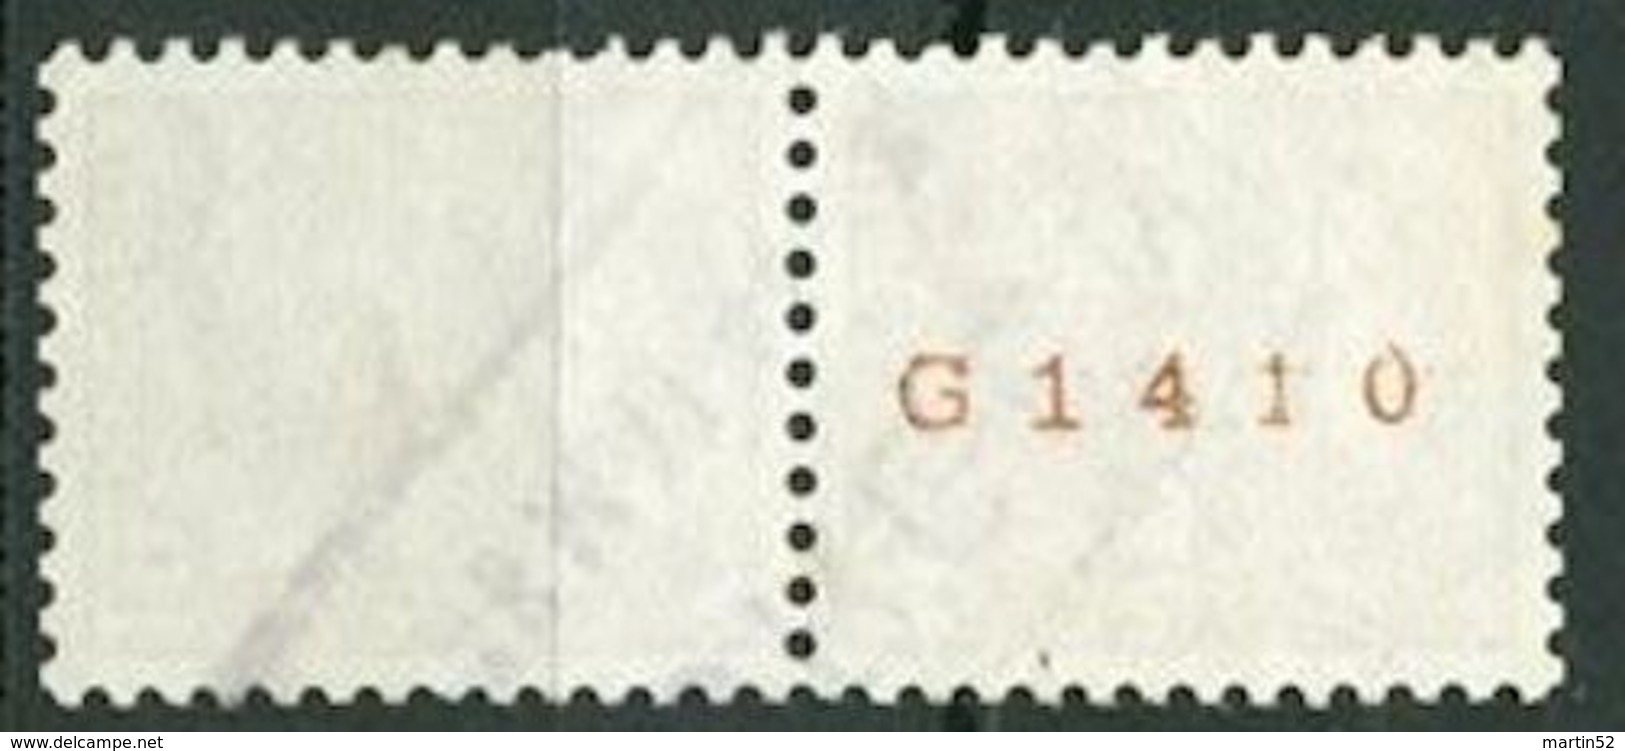 Schweiz Suisse 1942: Chillon Rolle Rouleaux Coil Zu 257RM.01 Mi 363bR (No. G1410) Mit O HORGEN 18 MAI 44 (Zu CHF 6.50) - Coil Stamps